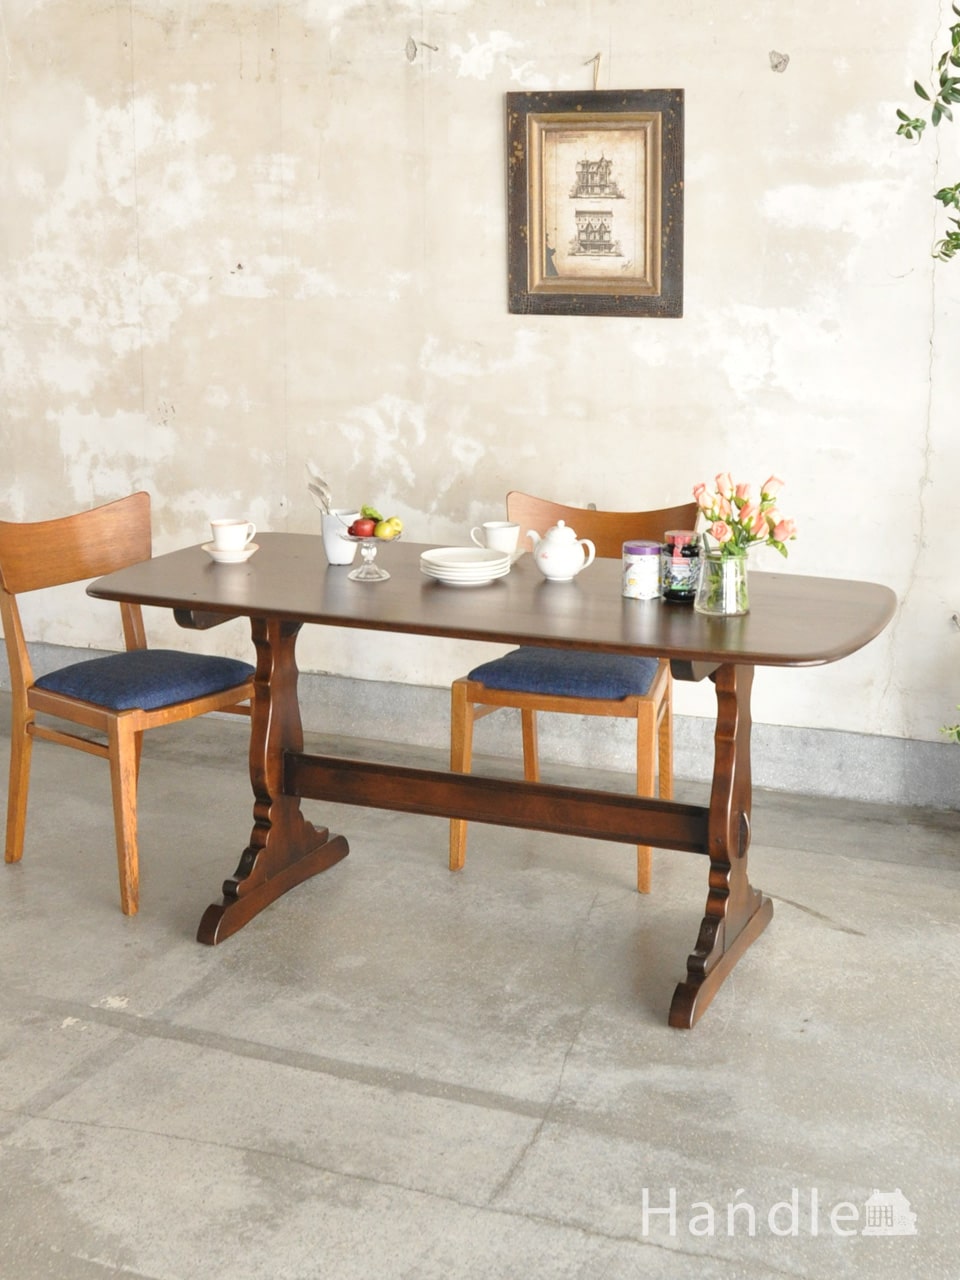 アーコール社のダイニングテーブル、足のデザインがおしゃれなヴィンテージのテーブル (x-1447-f)